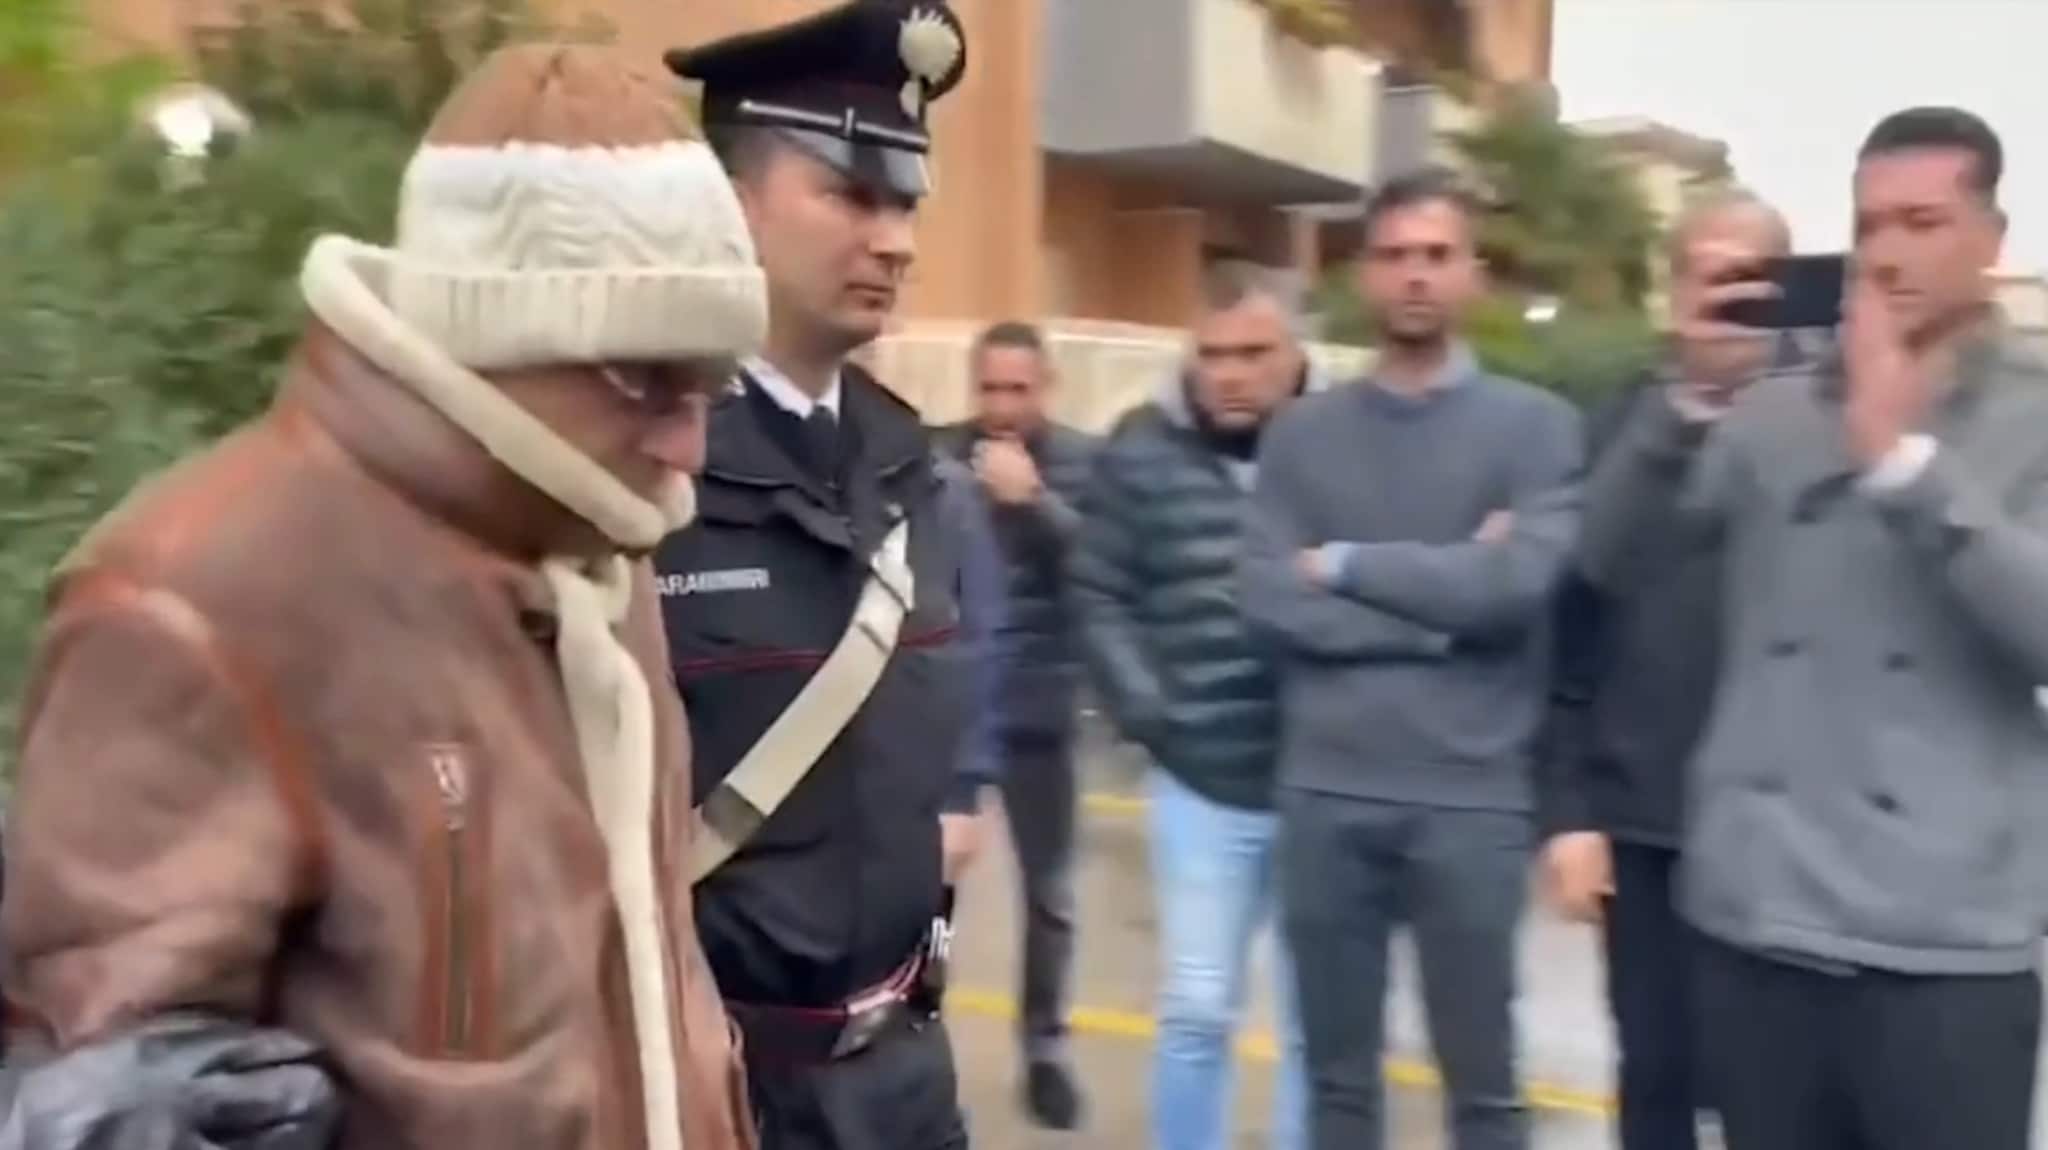 Matteo Messina Denaro, il boss mafioso italiano più ricercato, è stato arrestato